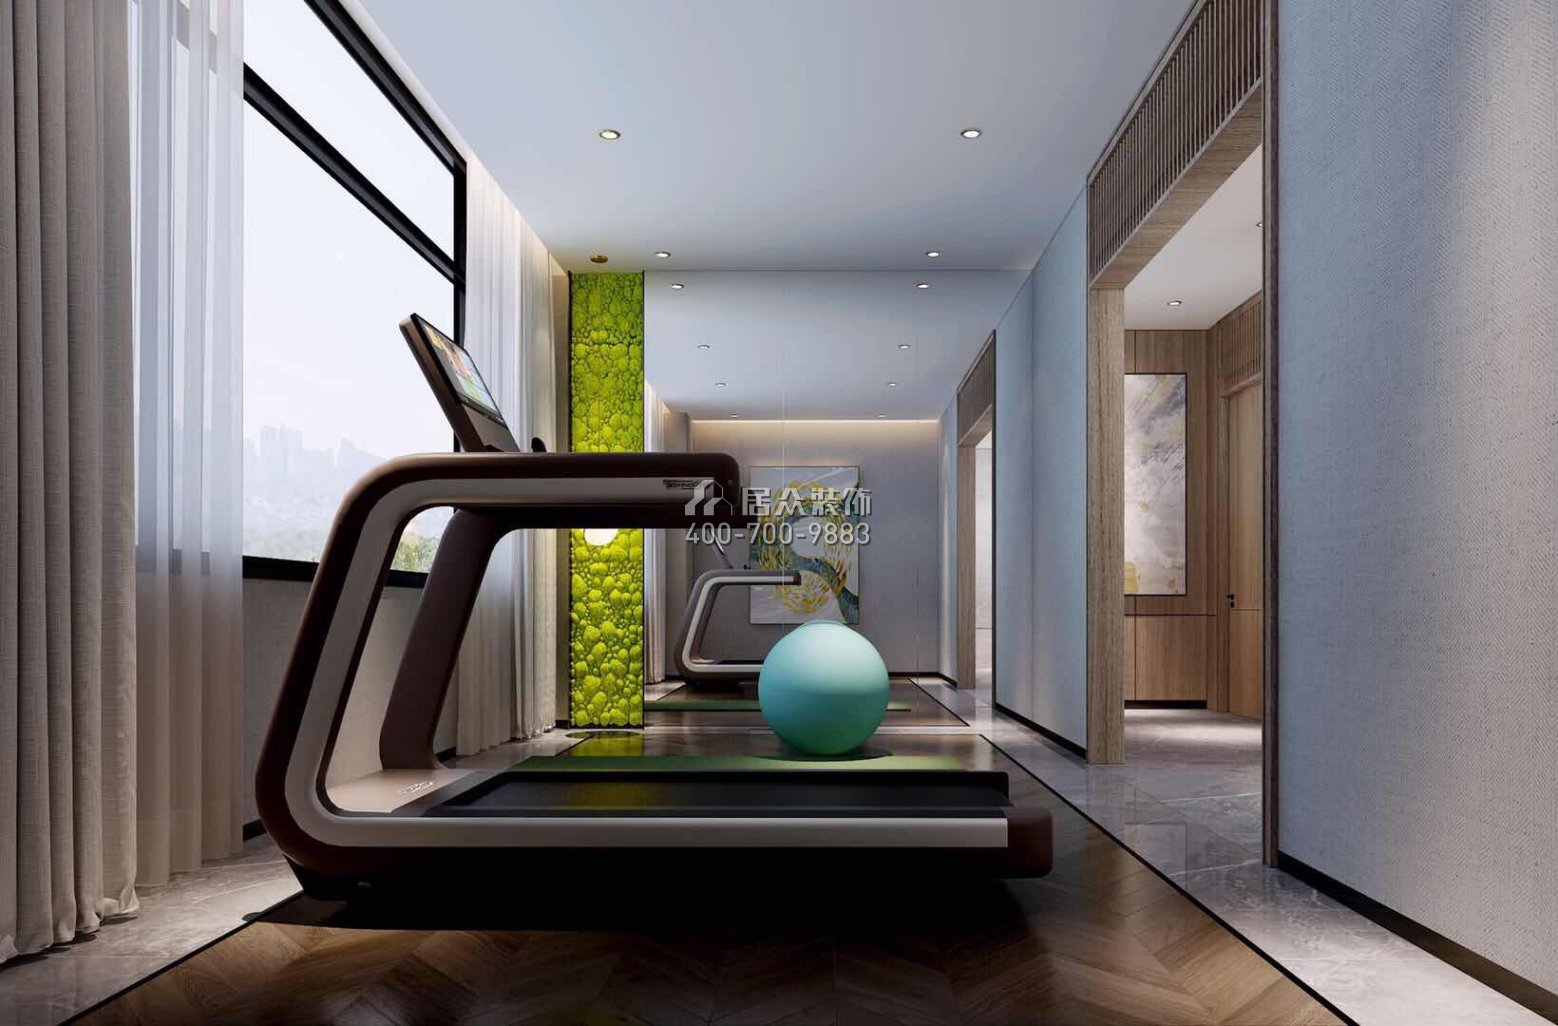 自建房300平方米现代简约风格平层户型家庭健身房装修效果图